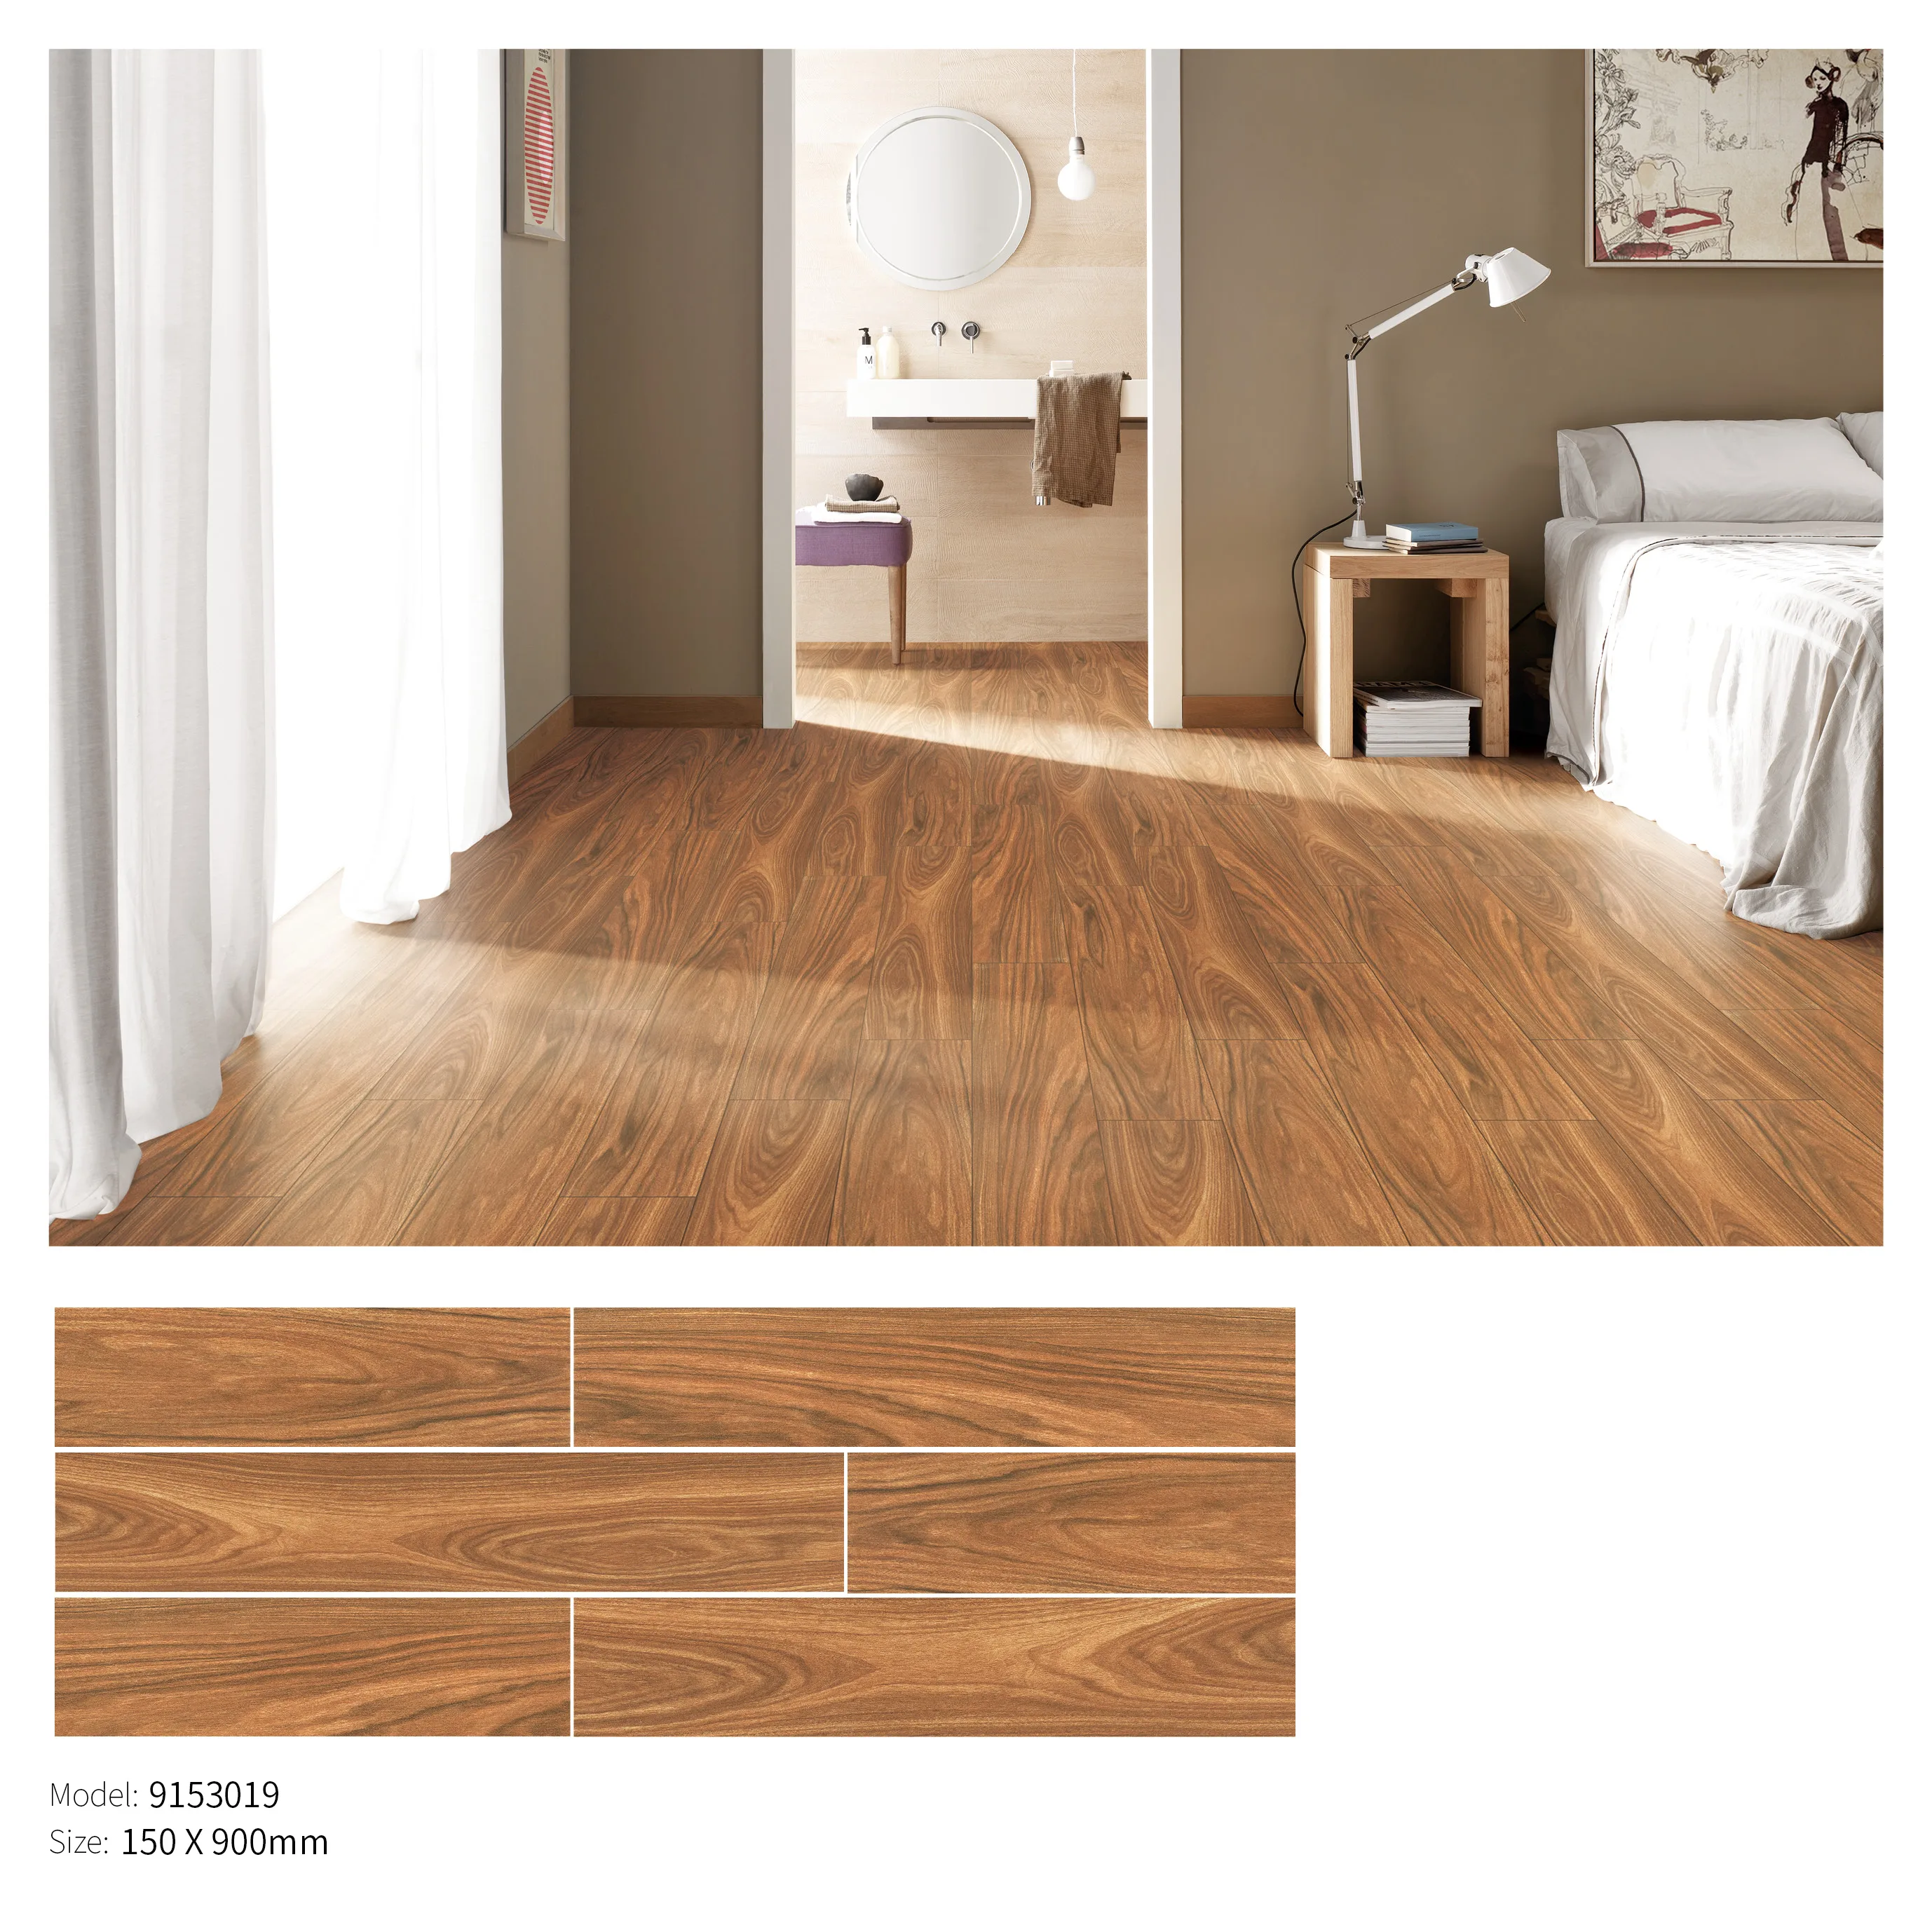 2020 House 150x900mm Wooden Grain Effect Floor Tiles For Living Room Floor Design Buy Porcelain Floor Tiles Design Wooden Grain Floor Tiles Wooden Floor Tiles Product On Alibaba Com